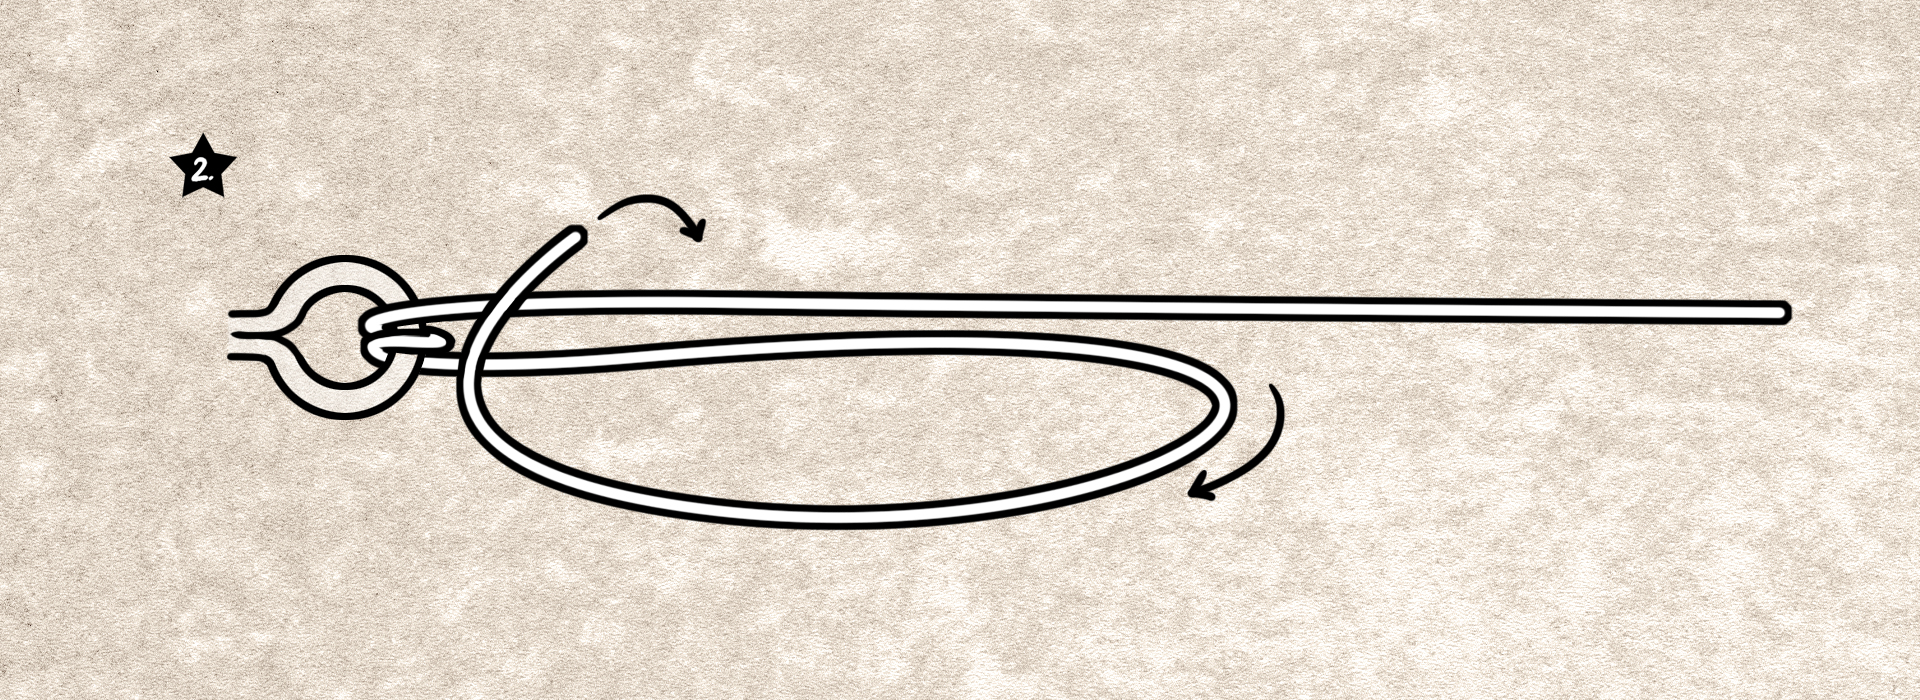 Grinner-Knoten für geflochtene Schnüre